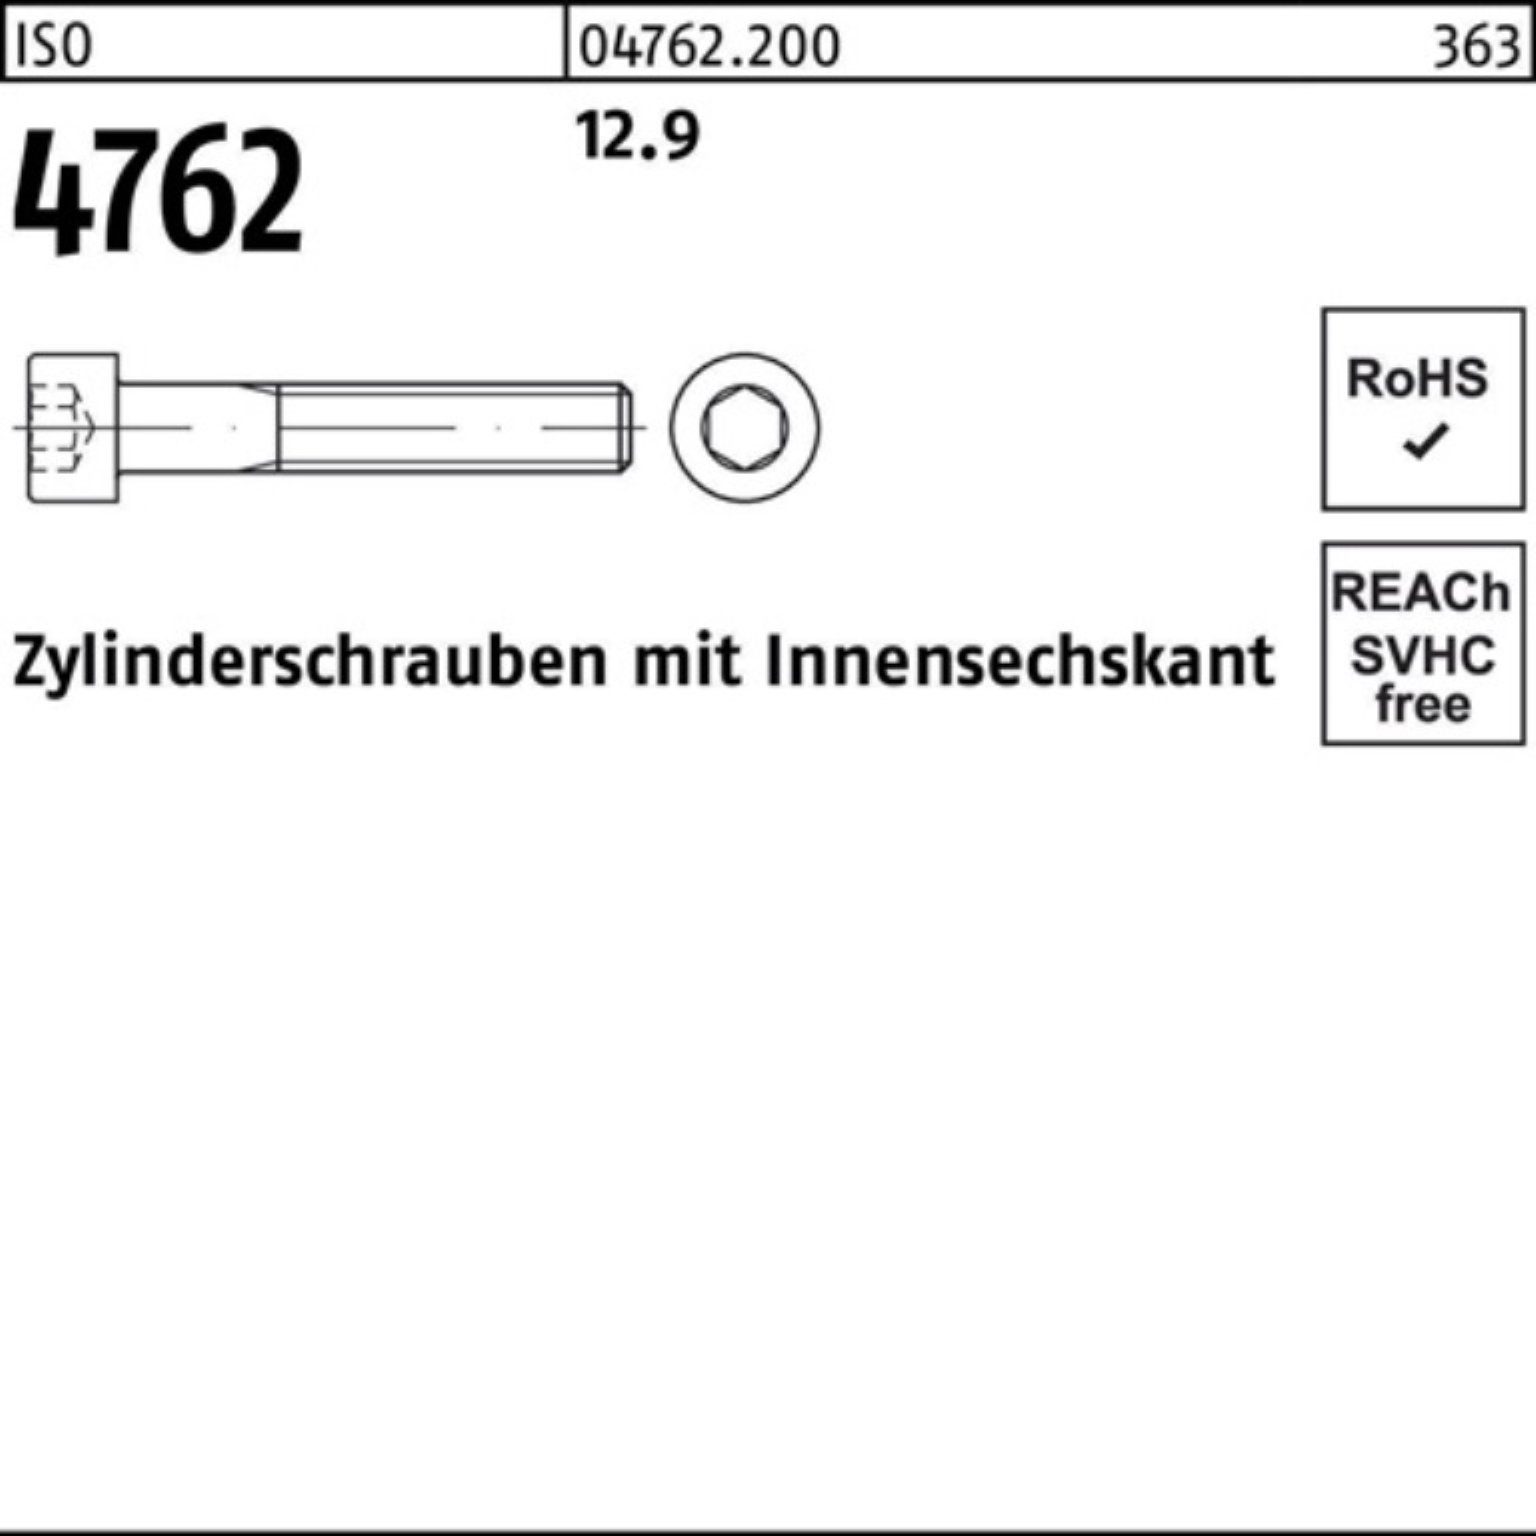 Zylinderschraube Zylinderschraube 100er 12.9 Innen-6kt 1 240 ISO Stück M36x Reyher Pack 4762